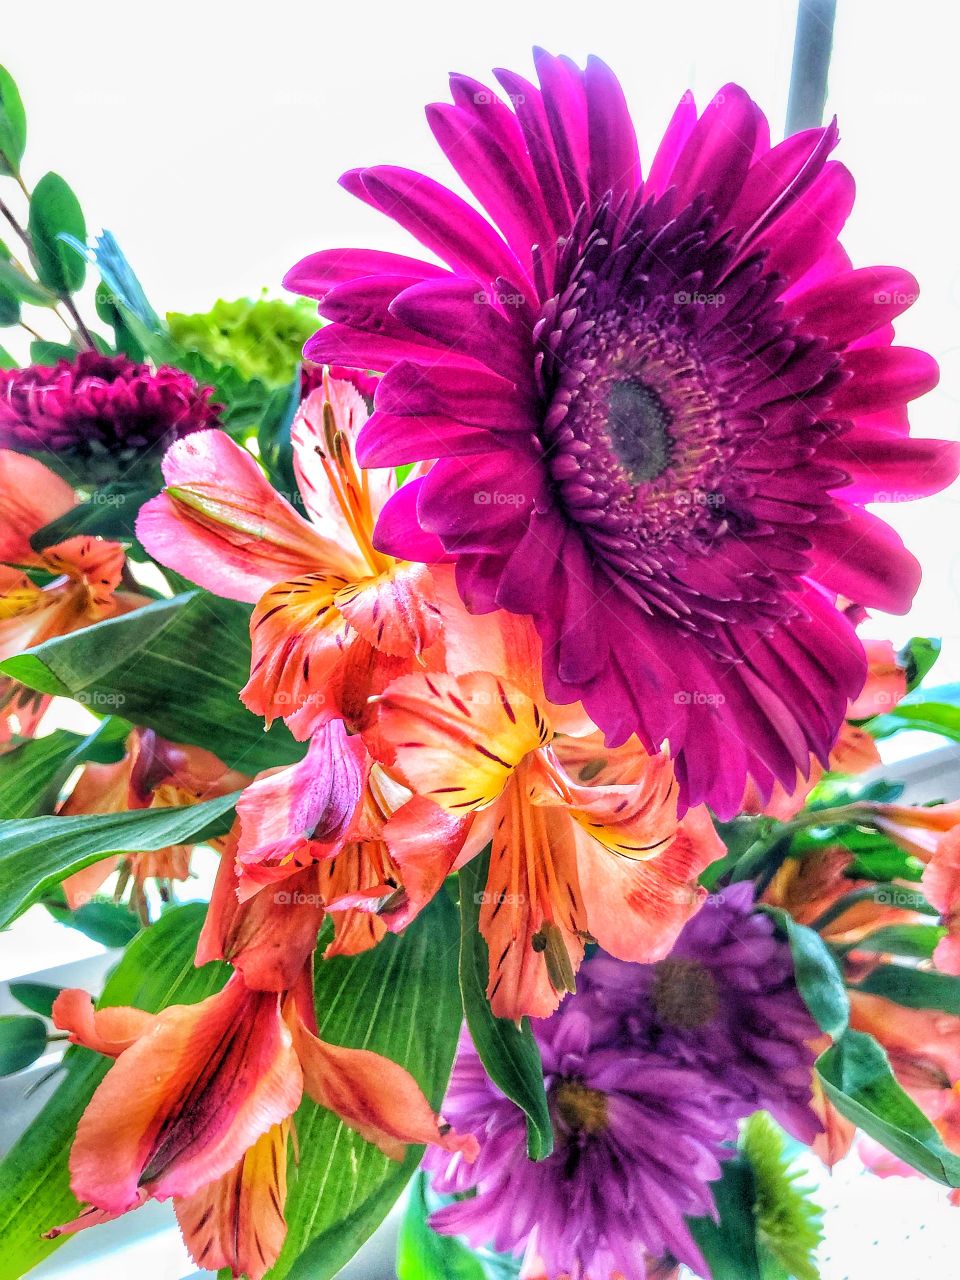 Mixed flower arrangement closeup 